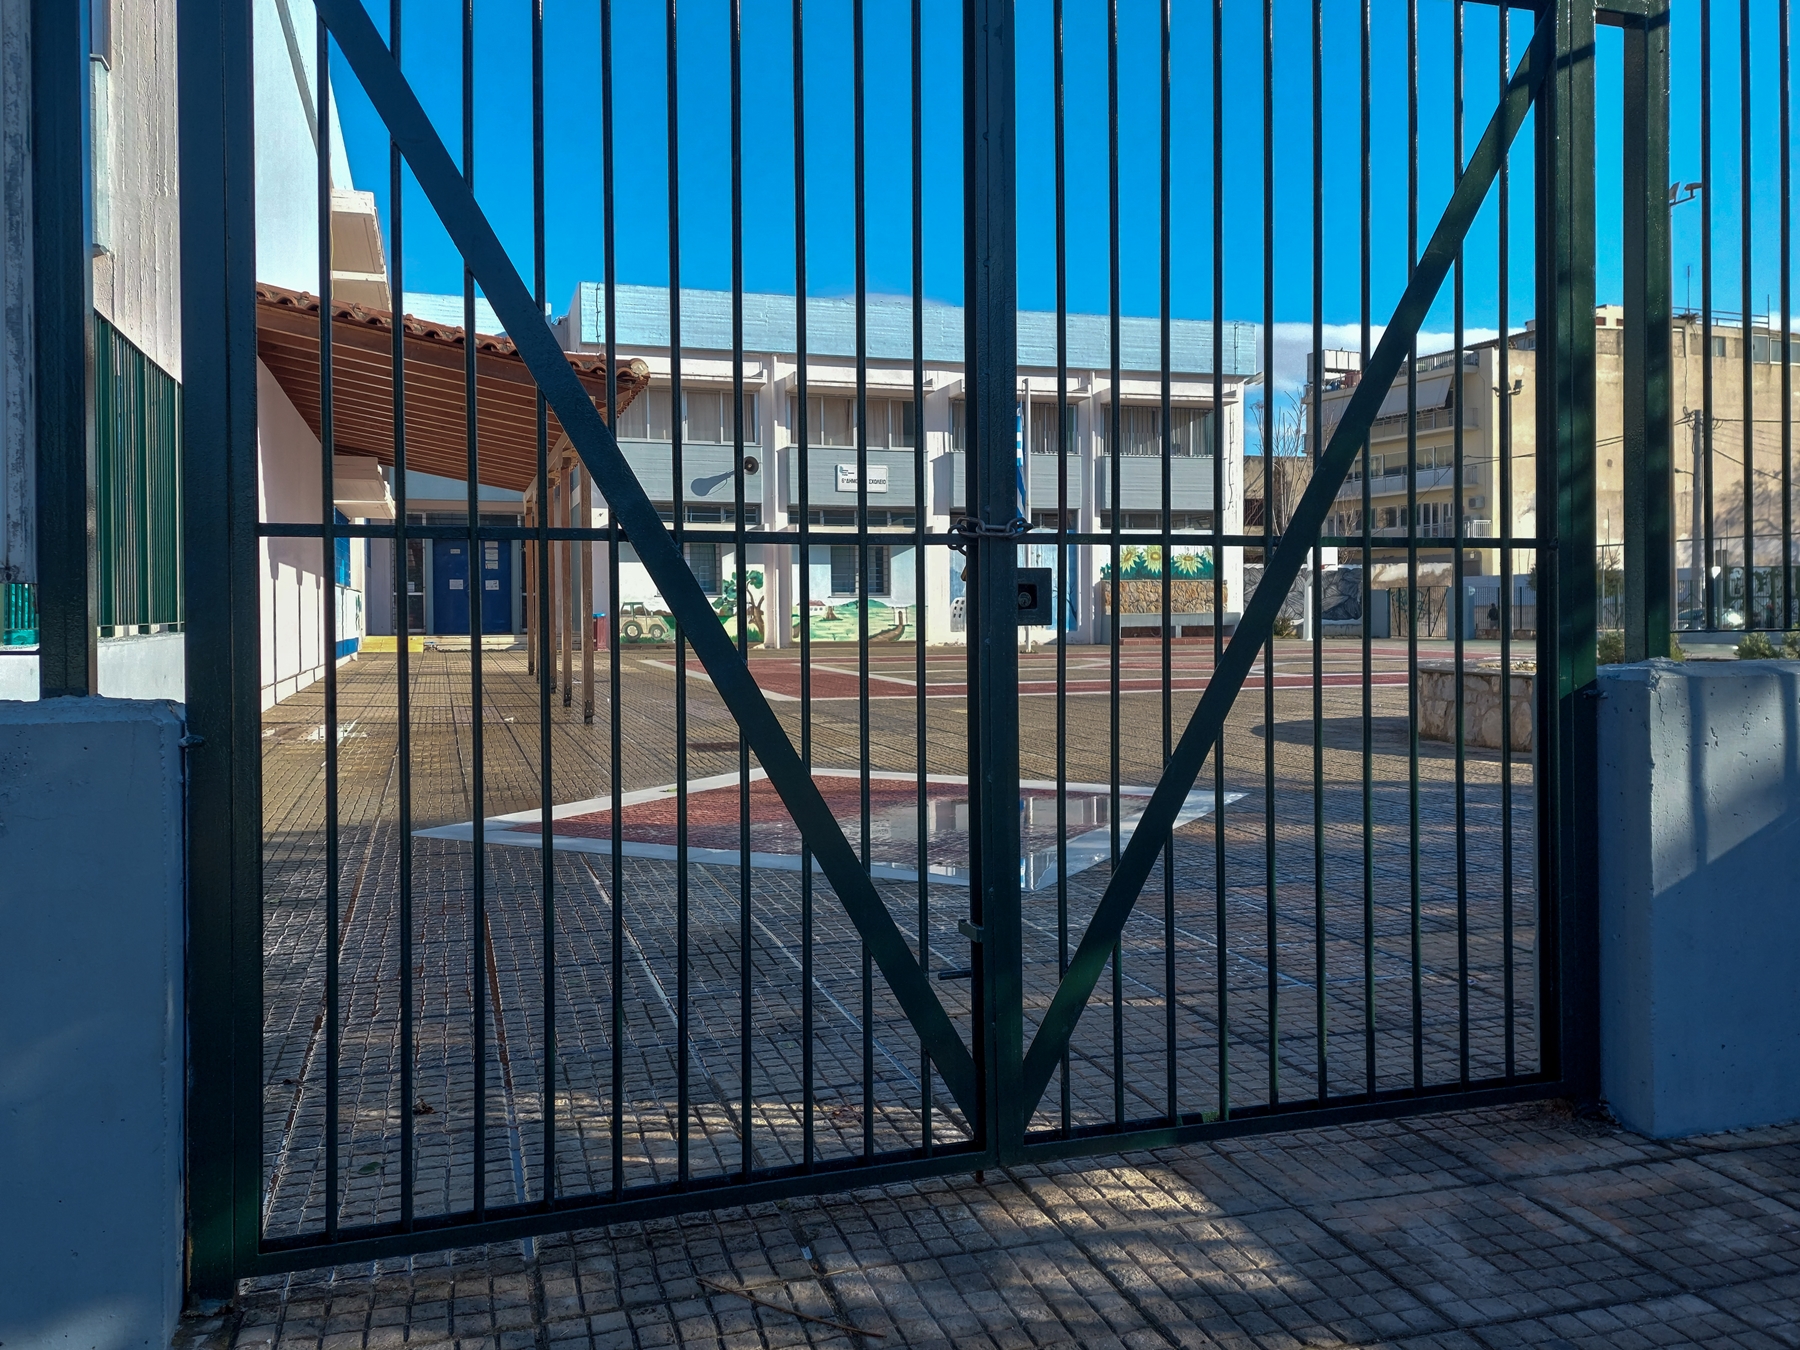 Ξυλοδαρμός ανηλίκων – Άγιος Δημήτριος: Νέο περιστατικό βίας έξω από σχολείο